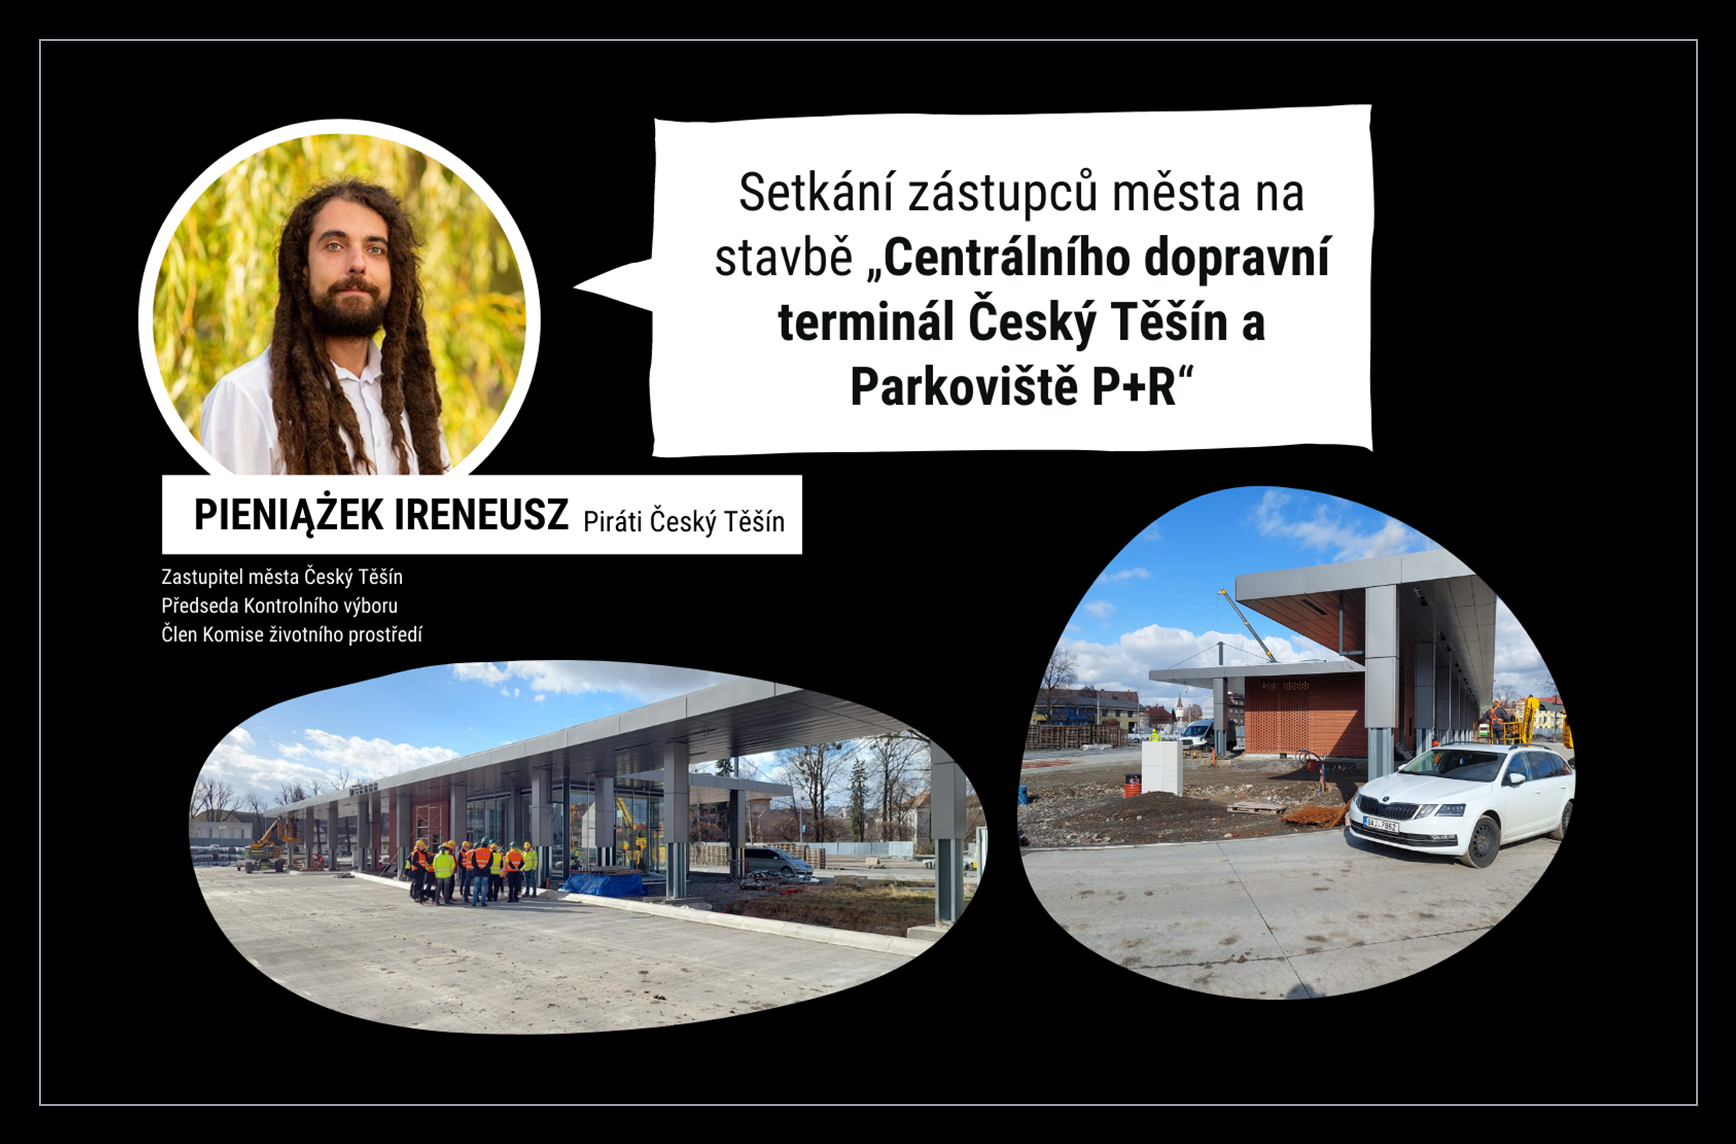 You are currently viewing Setkání zástupců města, zhotovitele a autora na stavbě „Centrální dopravní terminál Český Těšín a Parkoviště P+R“